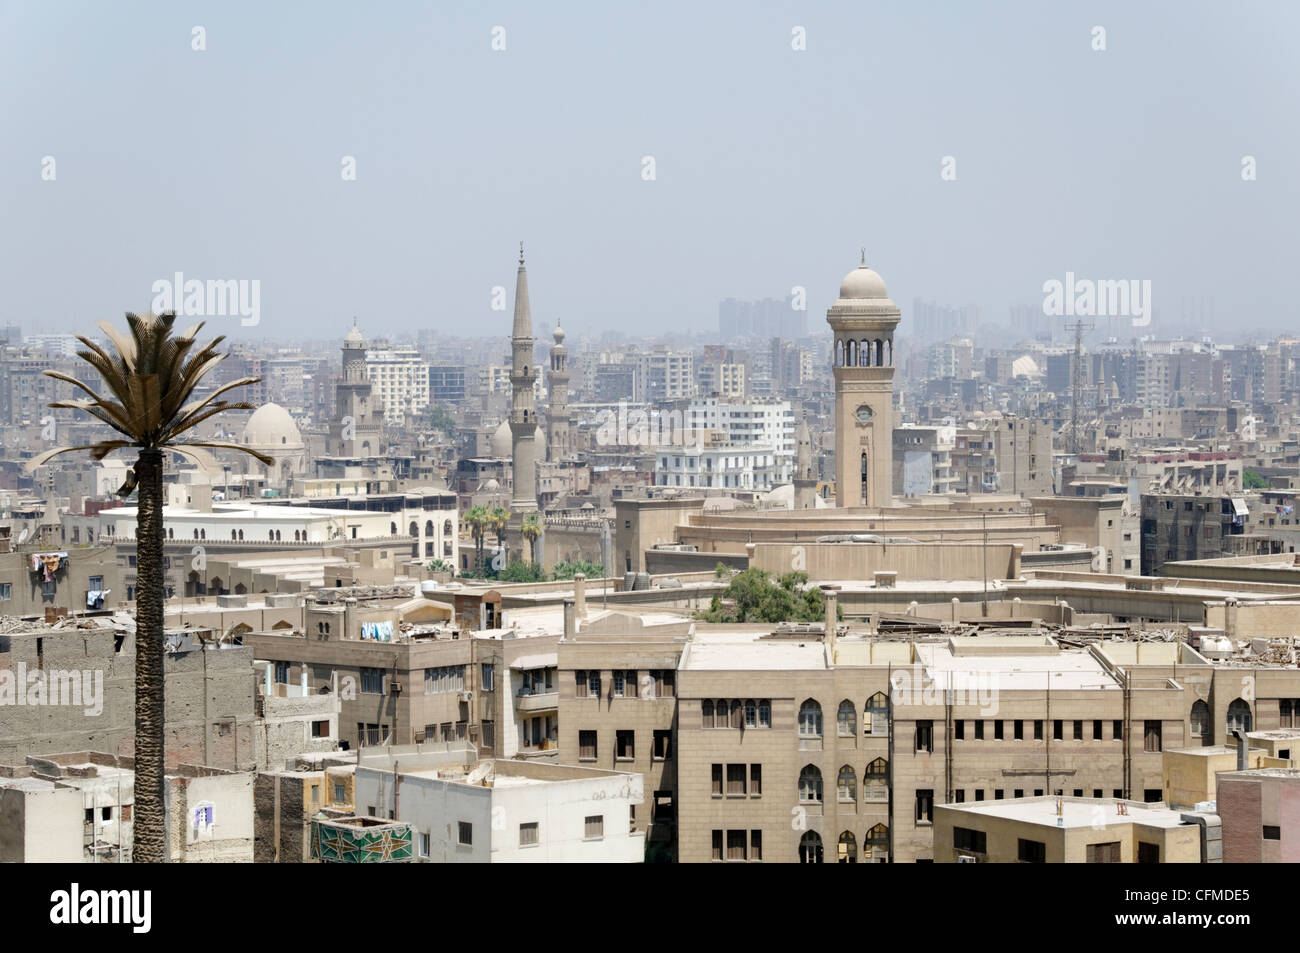 Kairo. Ägypten. Panorama von Kairo, die Hauptstadt Ägyptens und die größte Stadt in Afrika und der arabischen Welt. Stockfoto